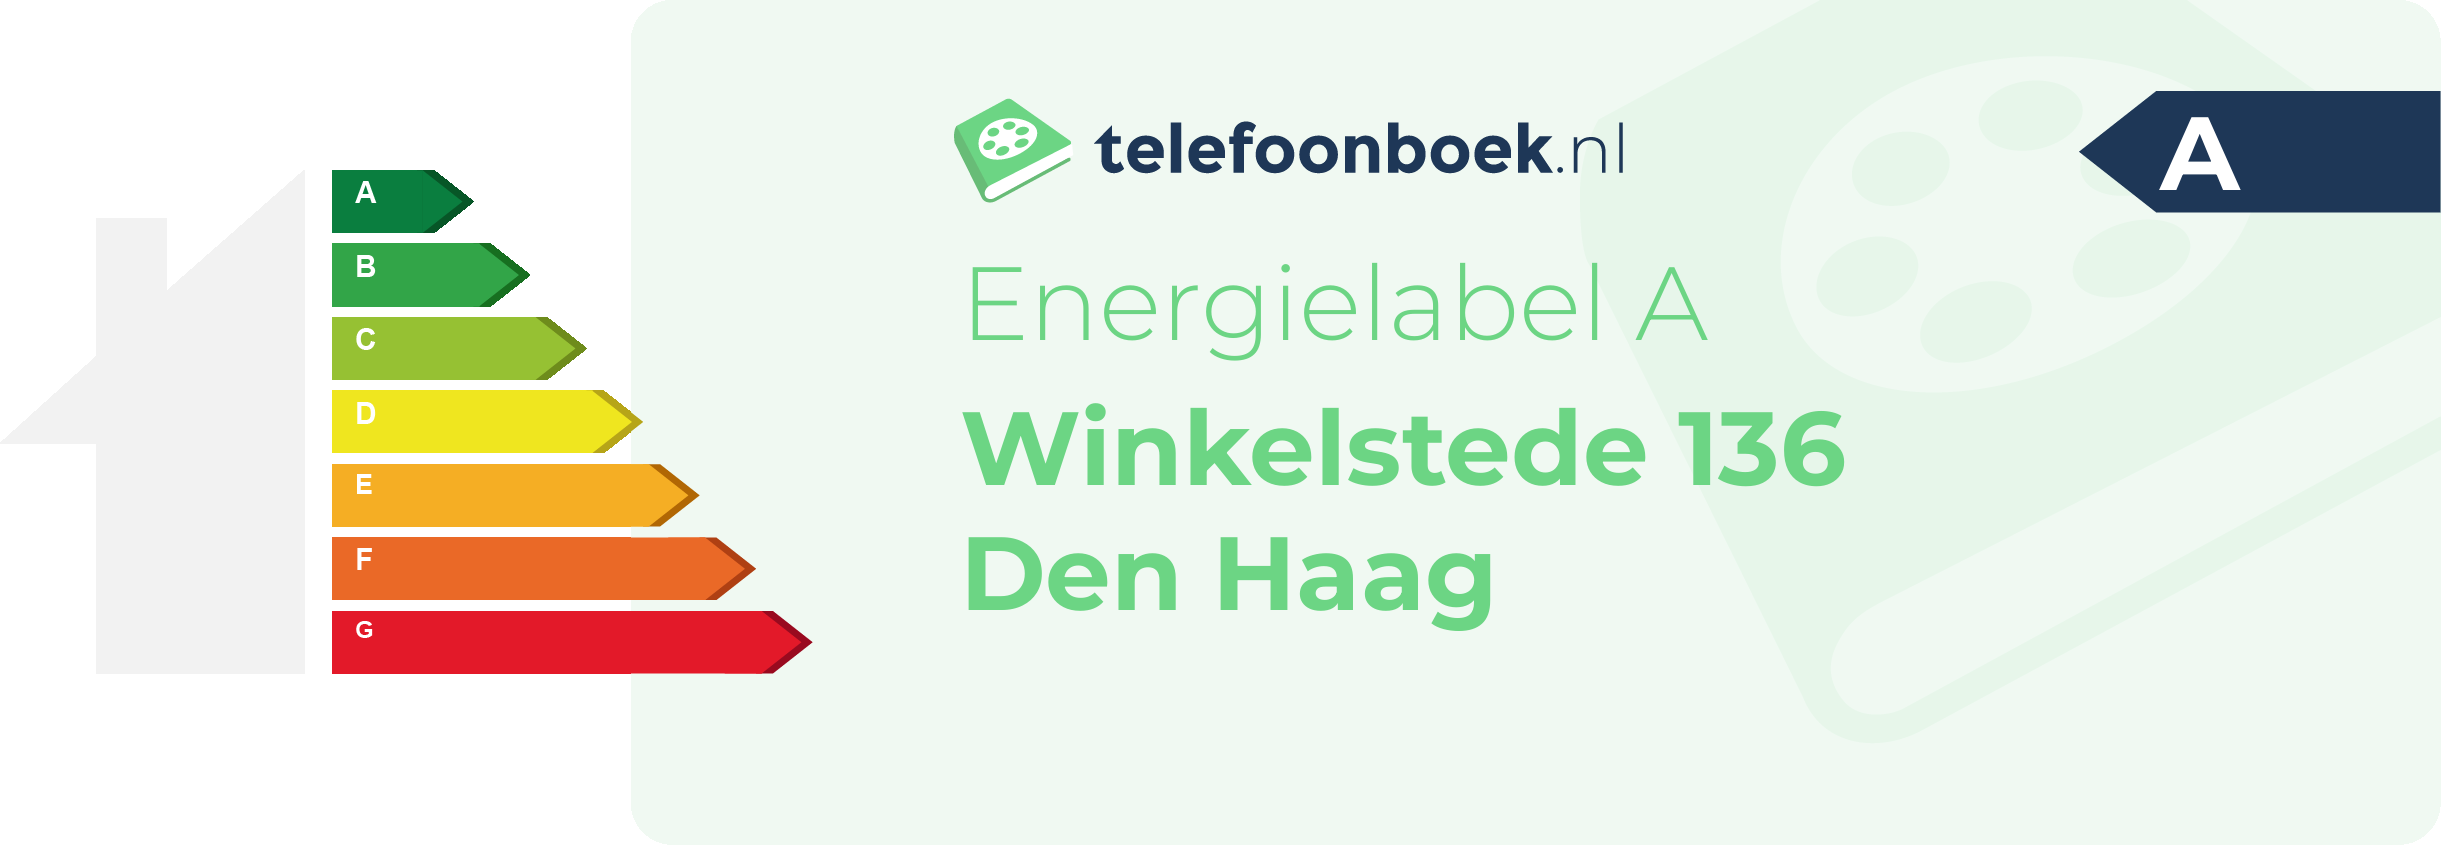 Energielabel Winkelstede 136 Den Haag